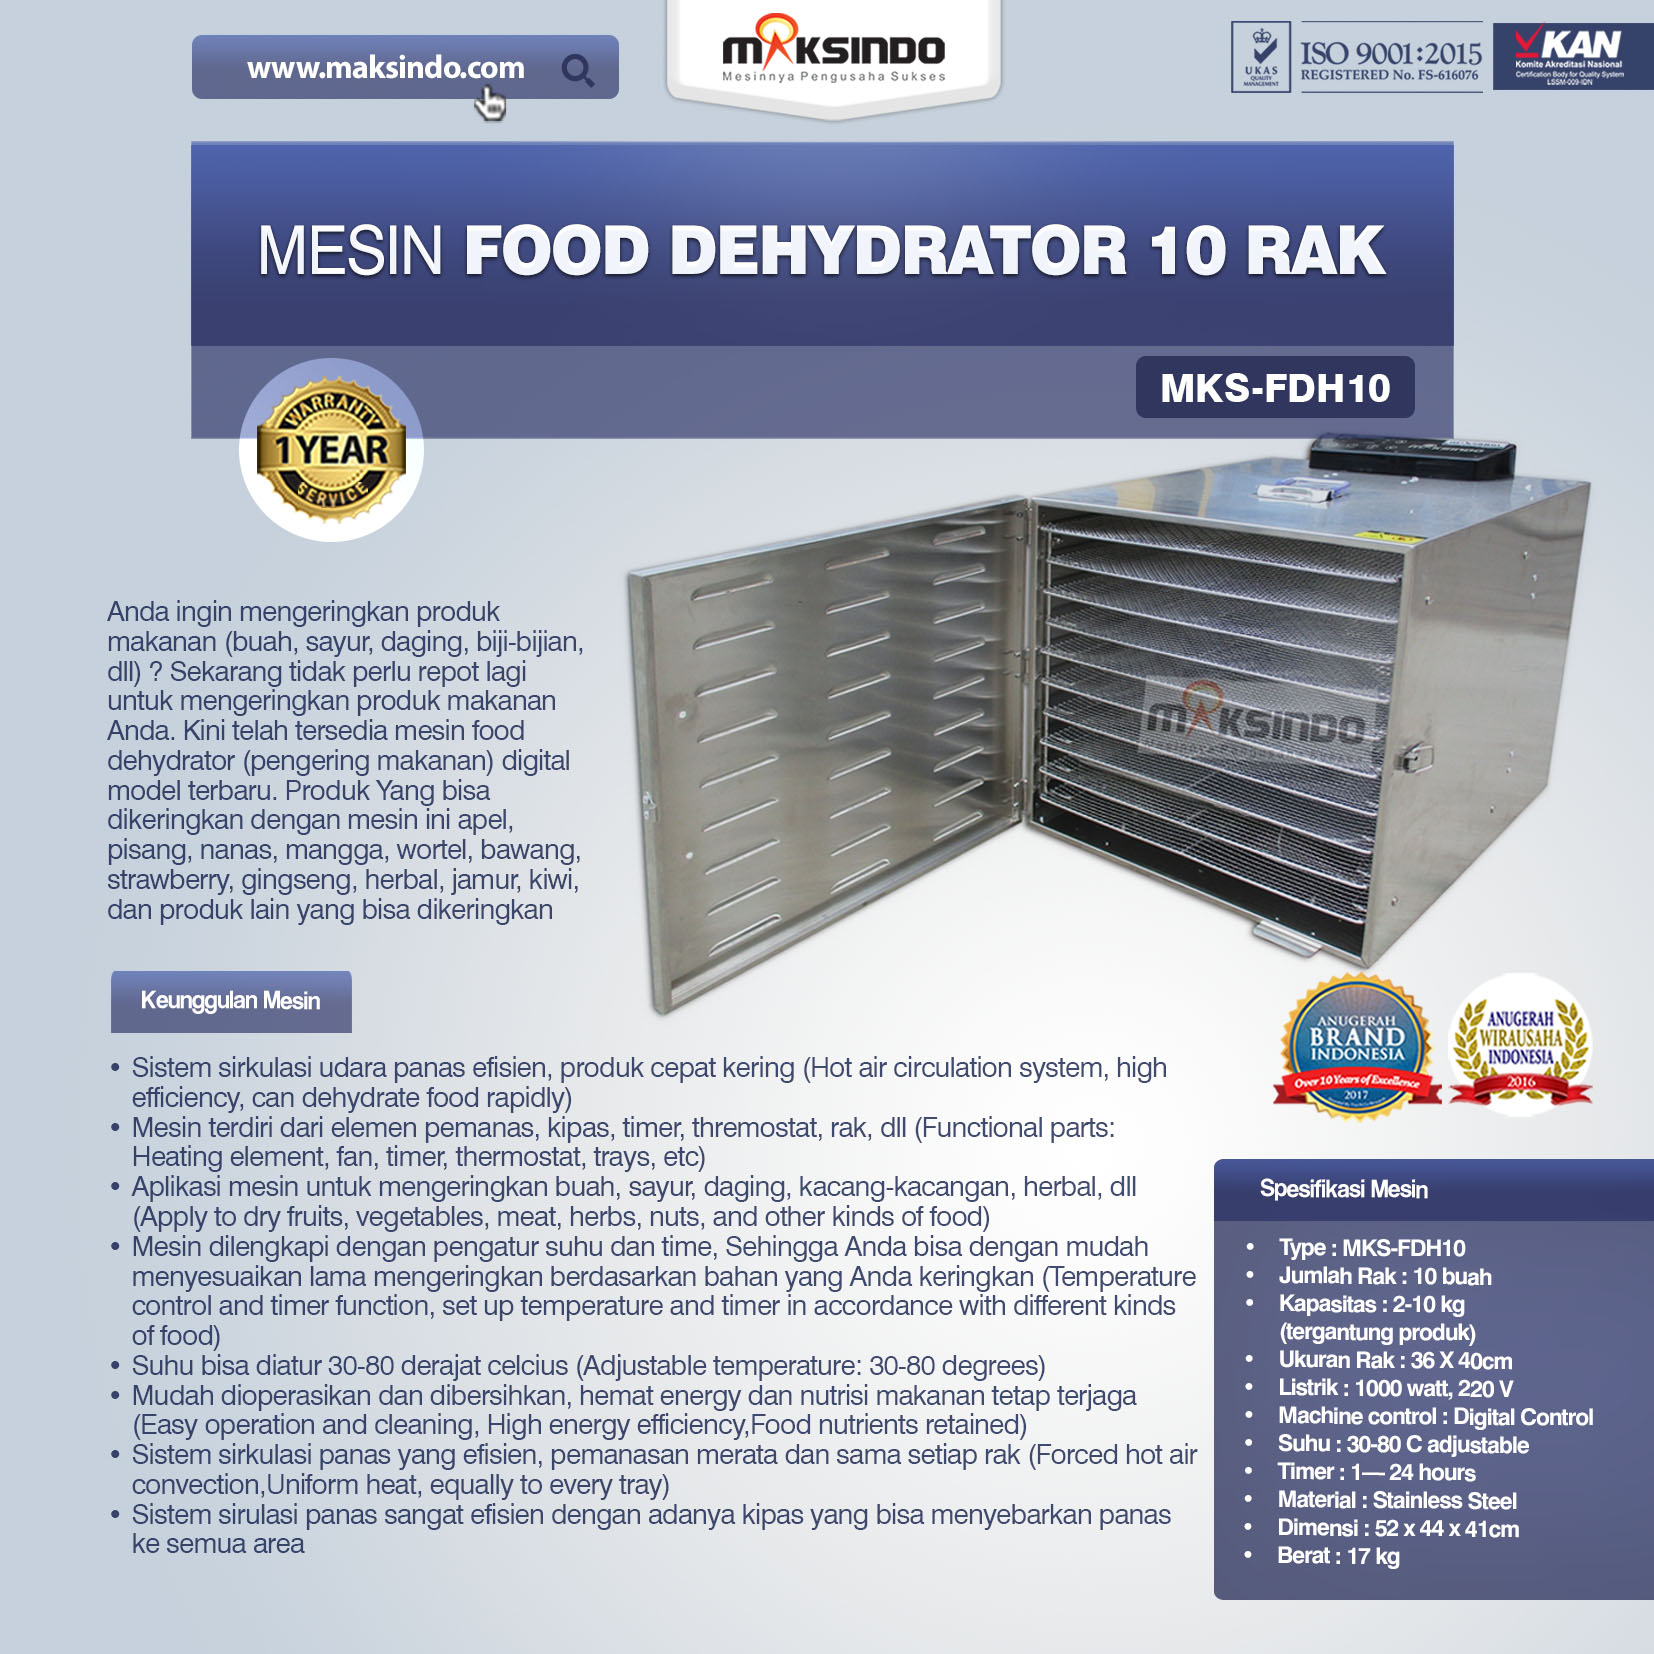 Jual Mesin Food Dehydrator 10 Rak (FDH10) di Jakarta